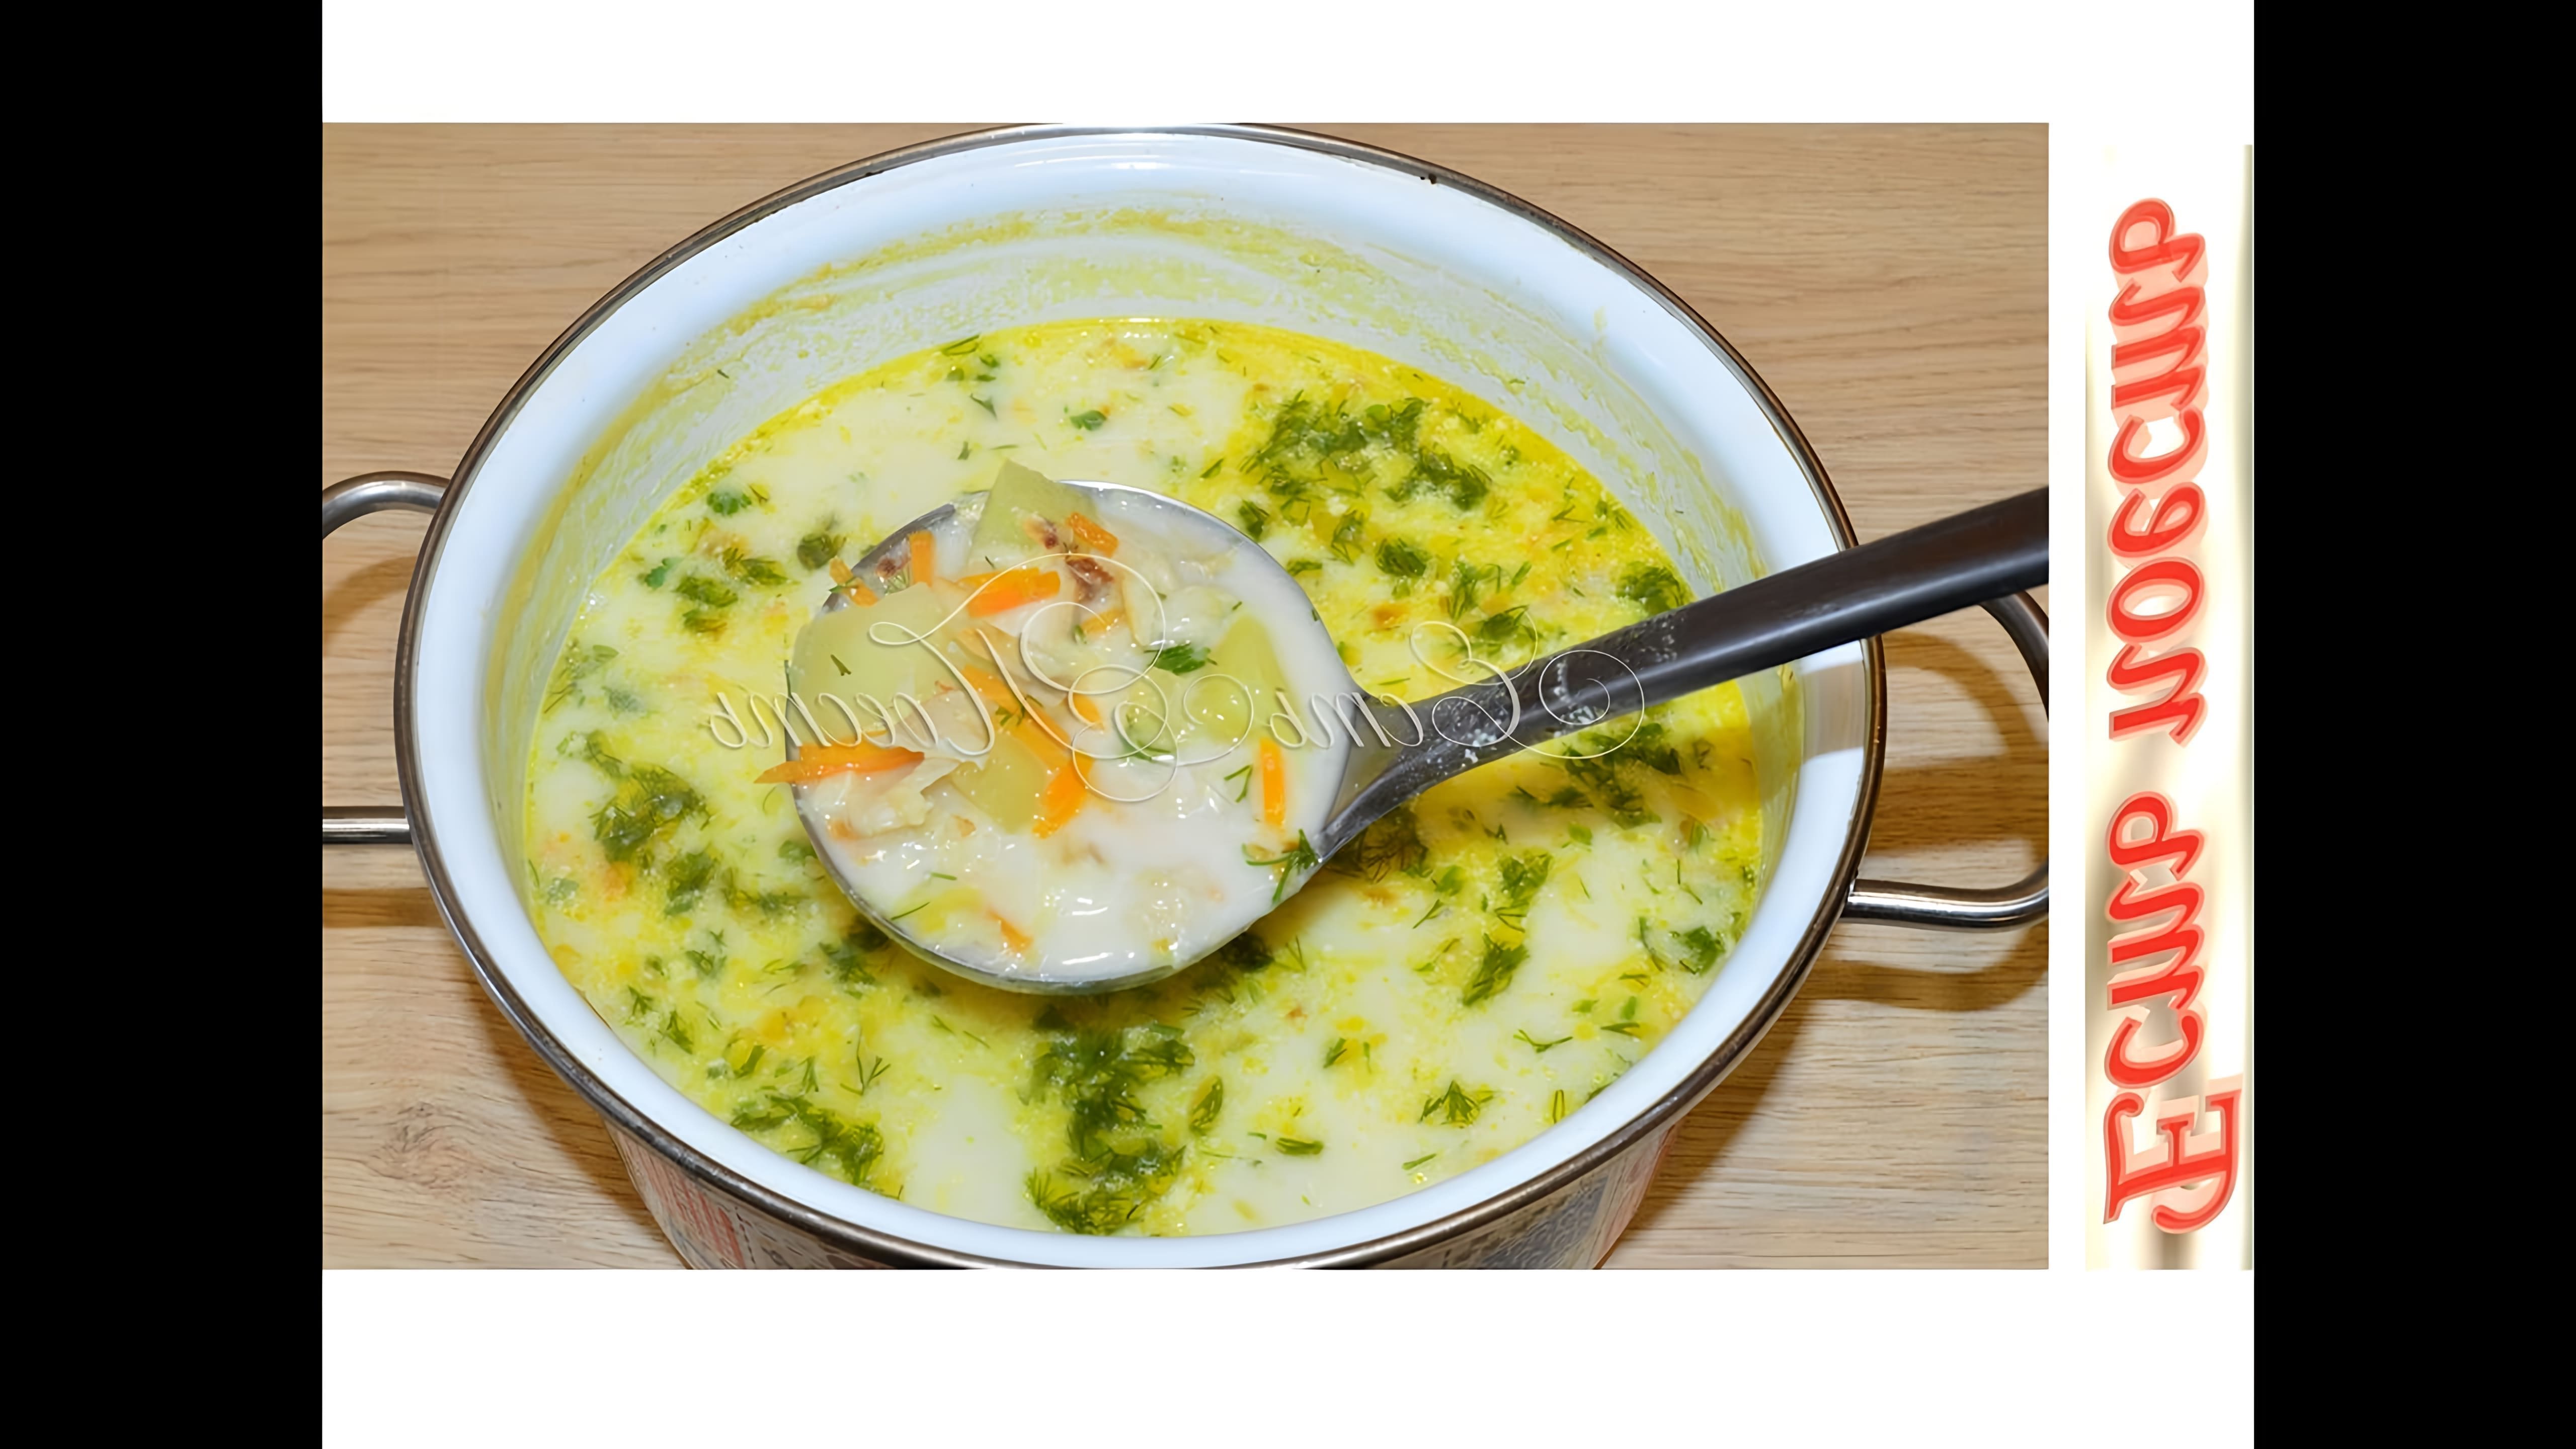 В этом видео демонстрируется рецепт рыбного супа с молоком